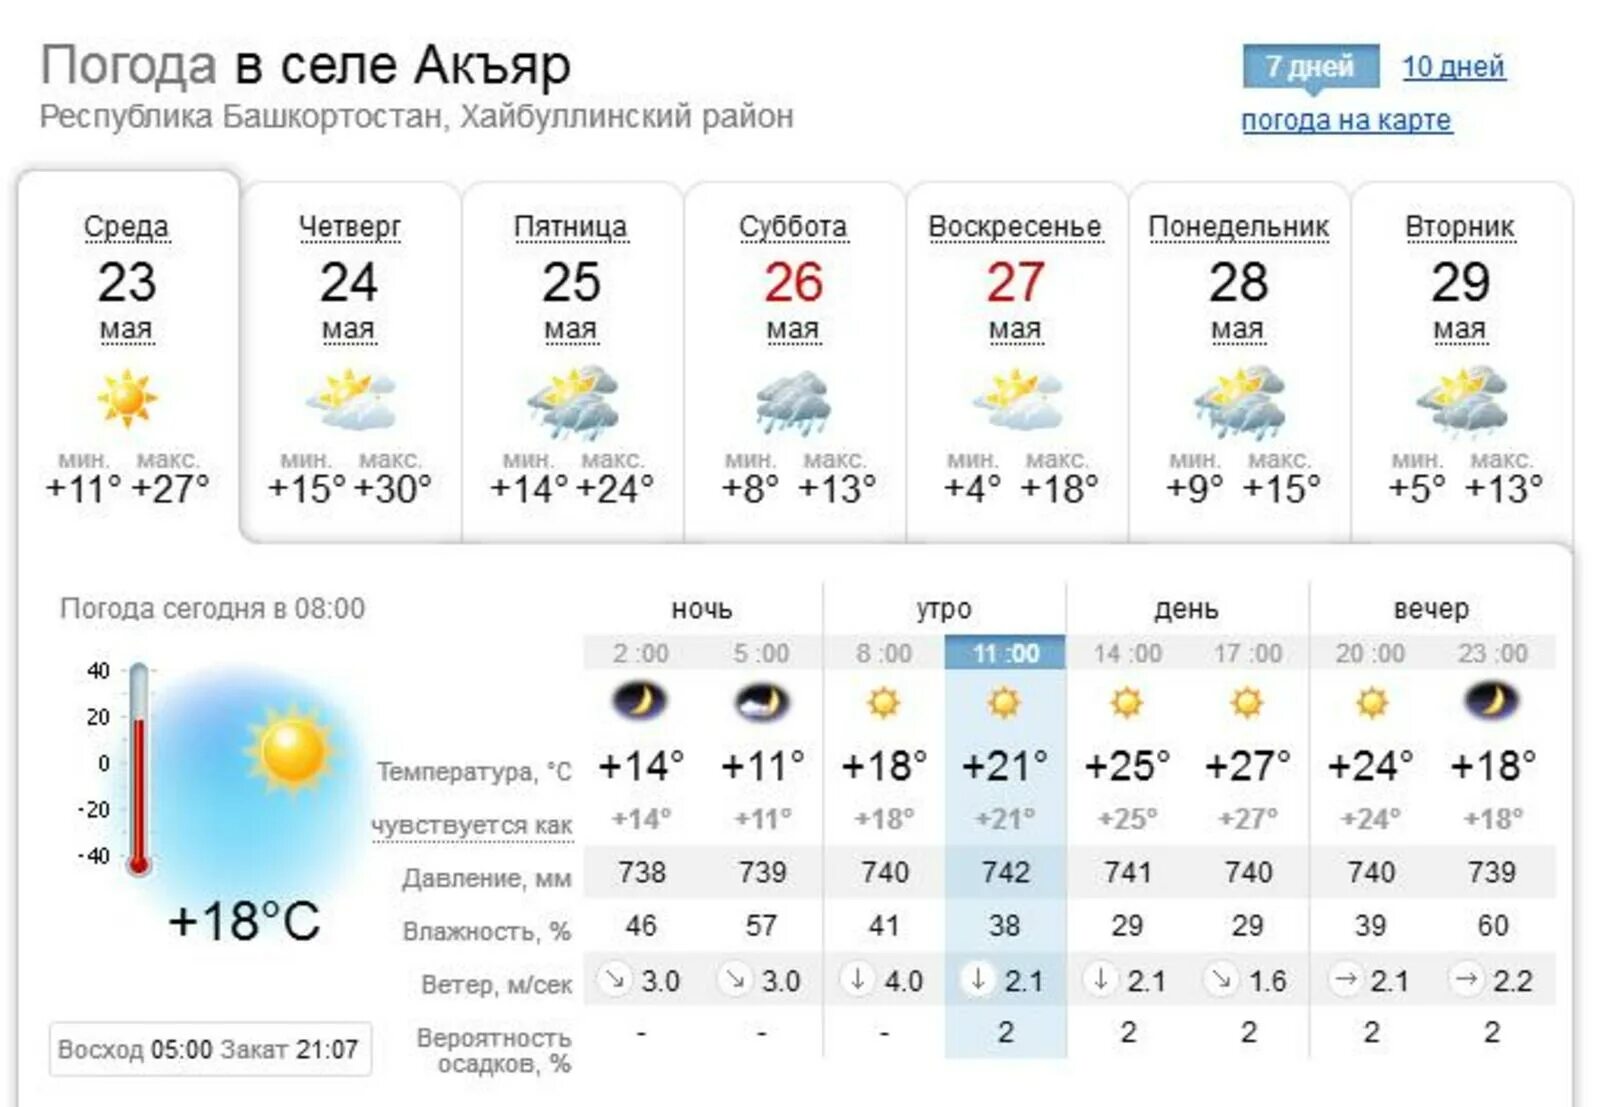 Погода синоптик на 10 дней. Погода в Севастополе сегодня. Температура в Севастополе сегодня. Погода в Севастополе сейчас. Прогноз погоды в Севастополе на сегодня.